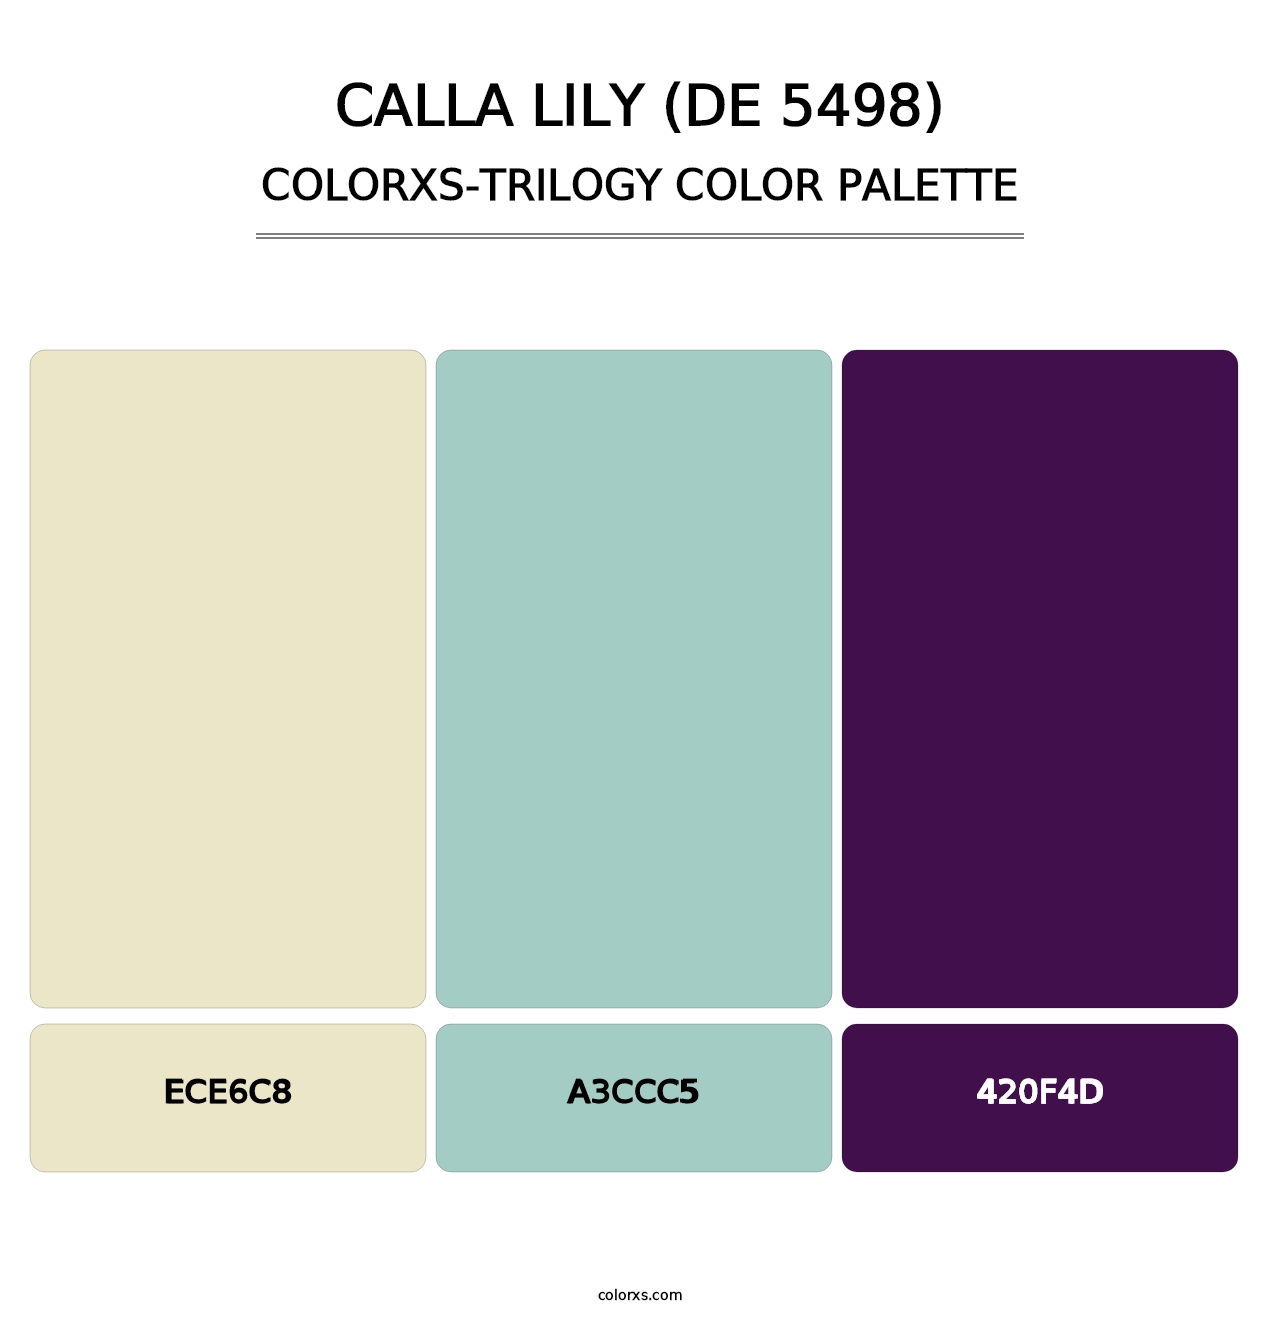 Calla Lily (DE 5498) - Colorxs Trilogy Palette